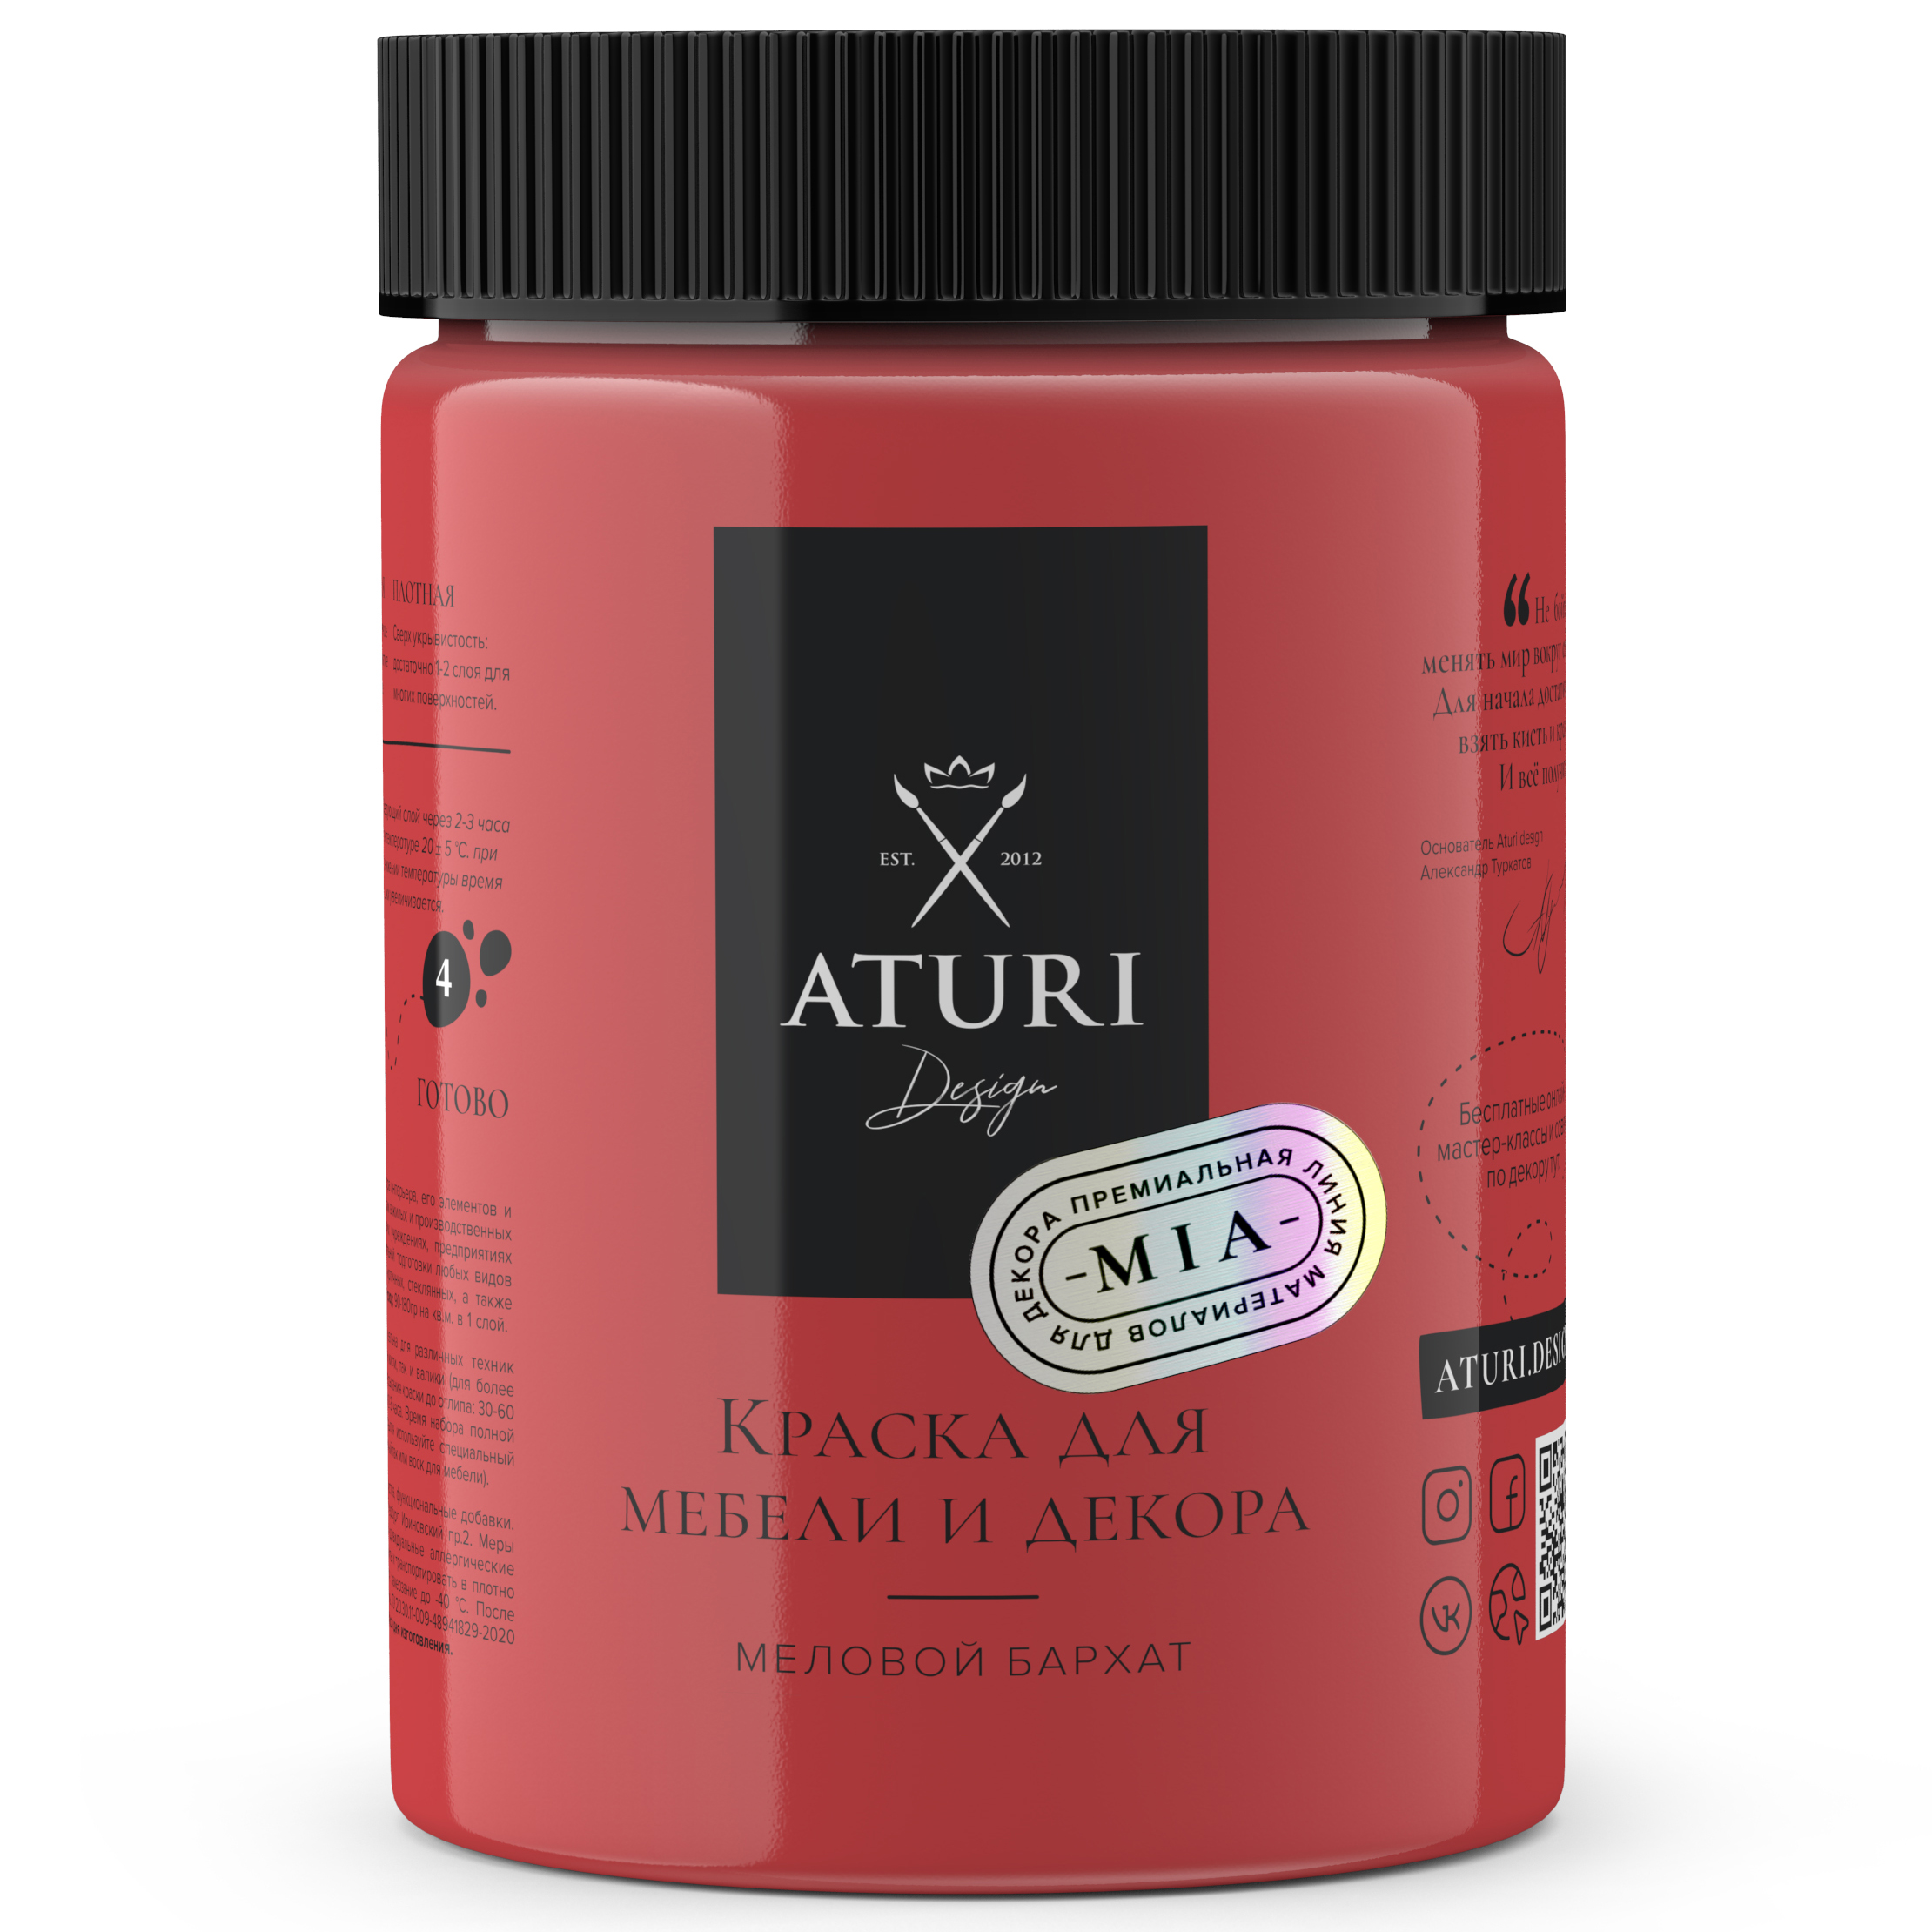 Краска Aturi Design Mia для мебели и декора, меловой бархат; Цвет: Красная помада, 830гр губная помада гигиеническая